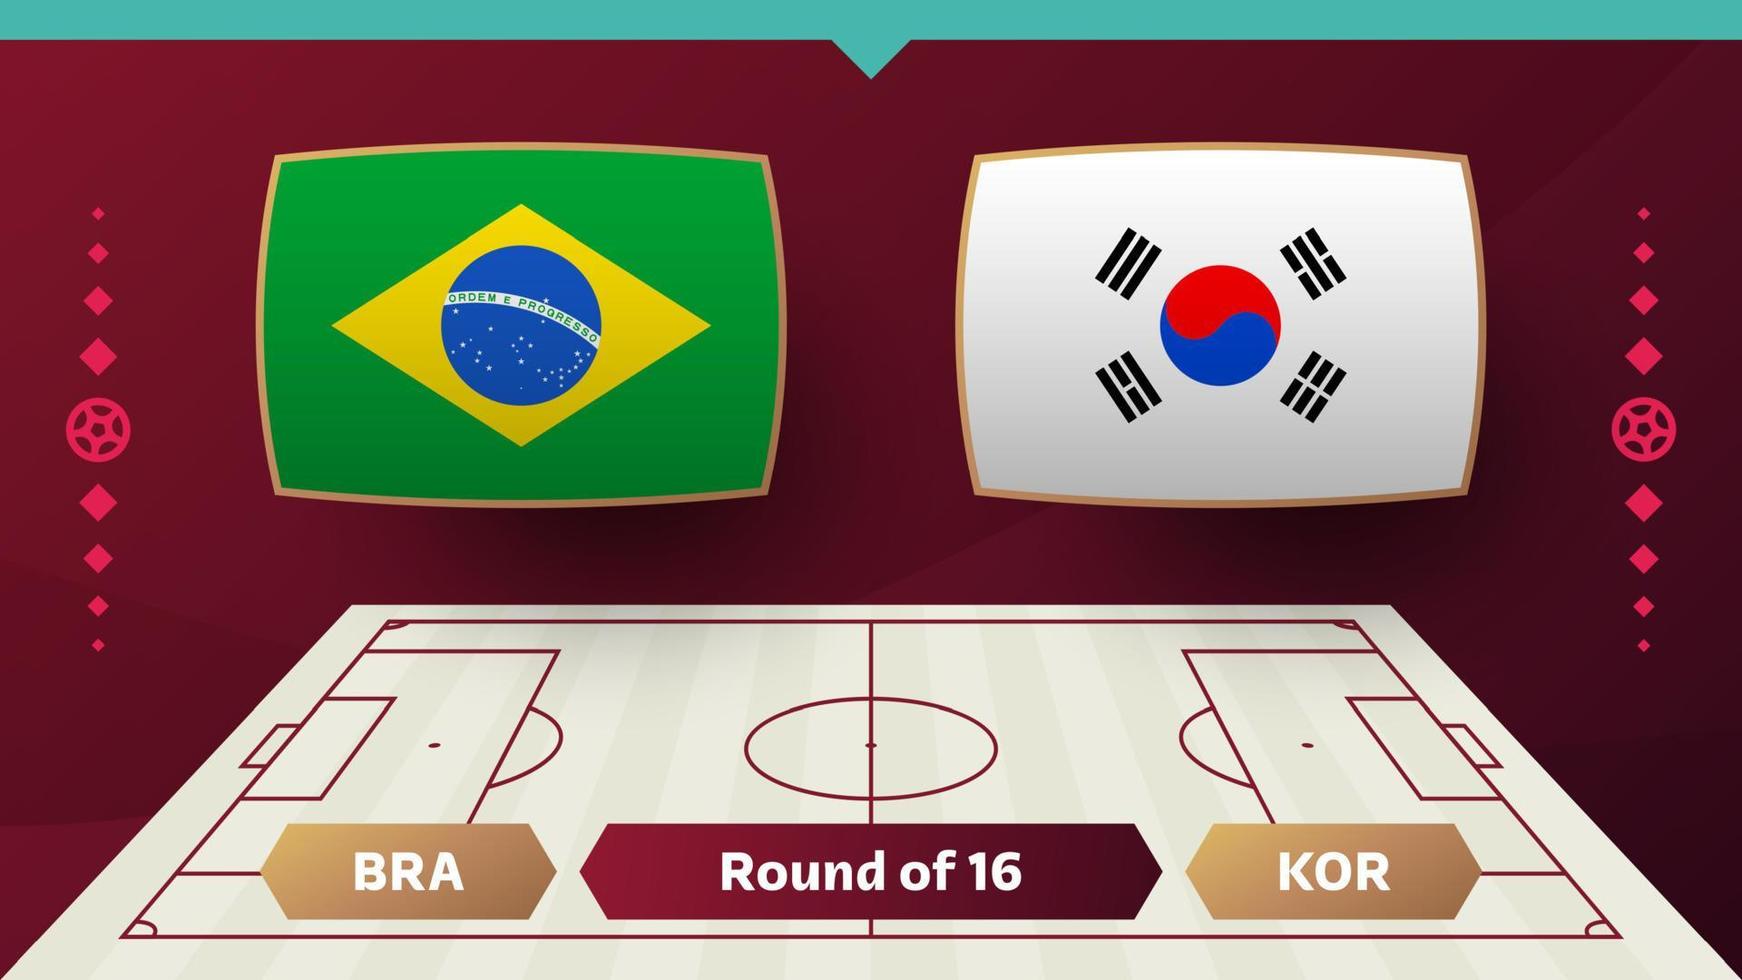 brasile Corea repubblica spareggio il giro di 16 incontro calcio 2022. 2022 mondo calcio campionato incontro contro squadre intro sport sfondo, campionato concorrenza manifesto, vettore